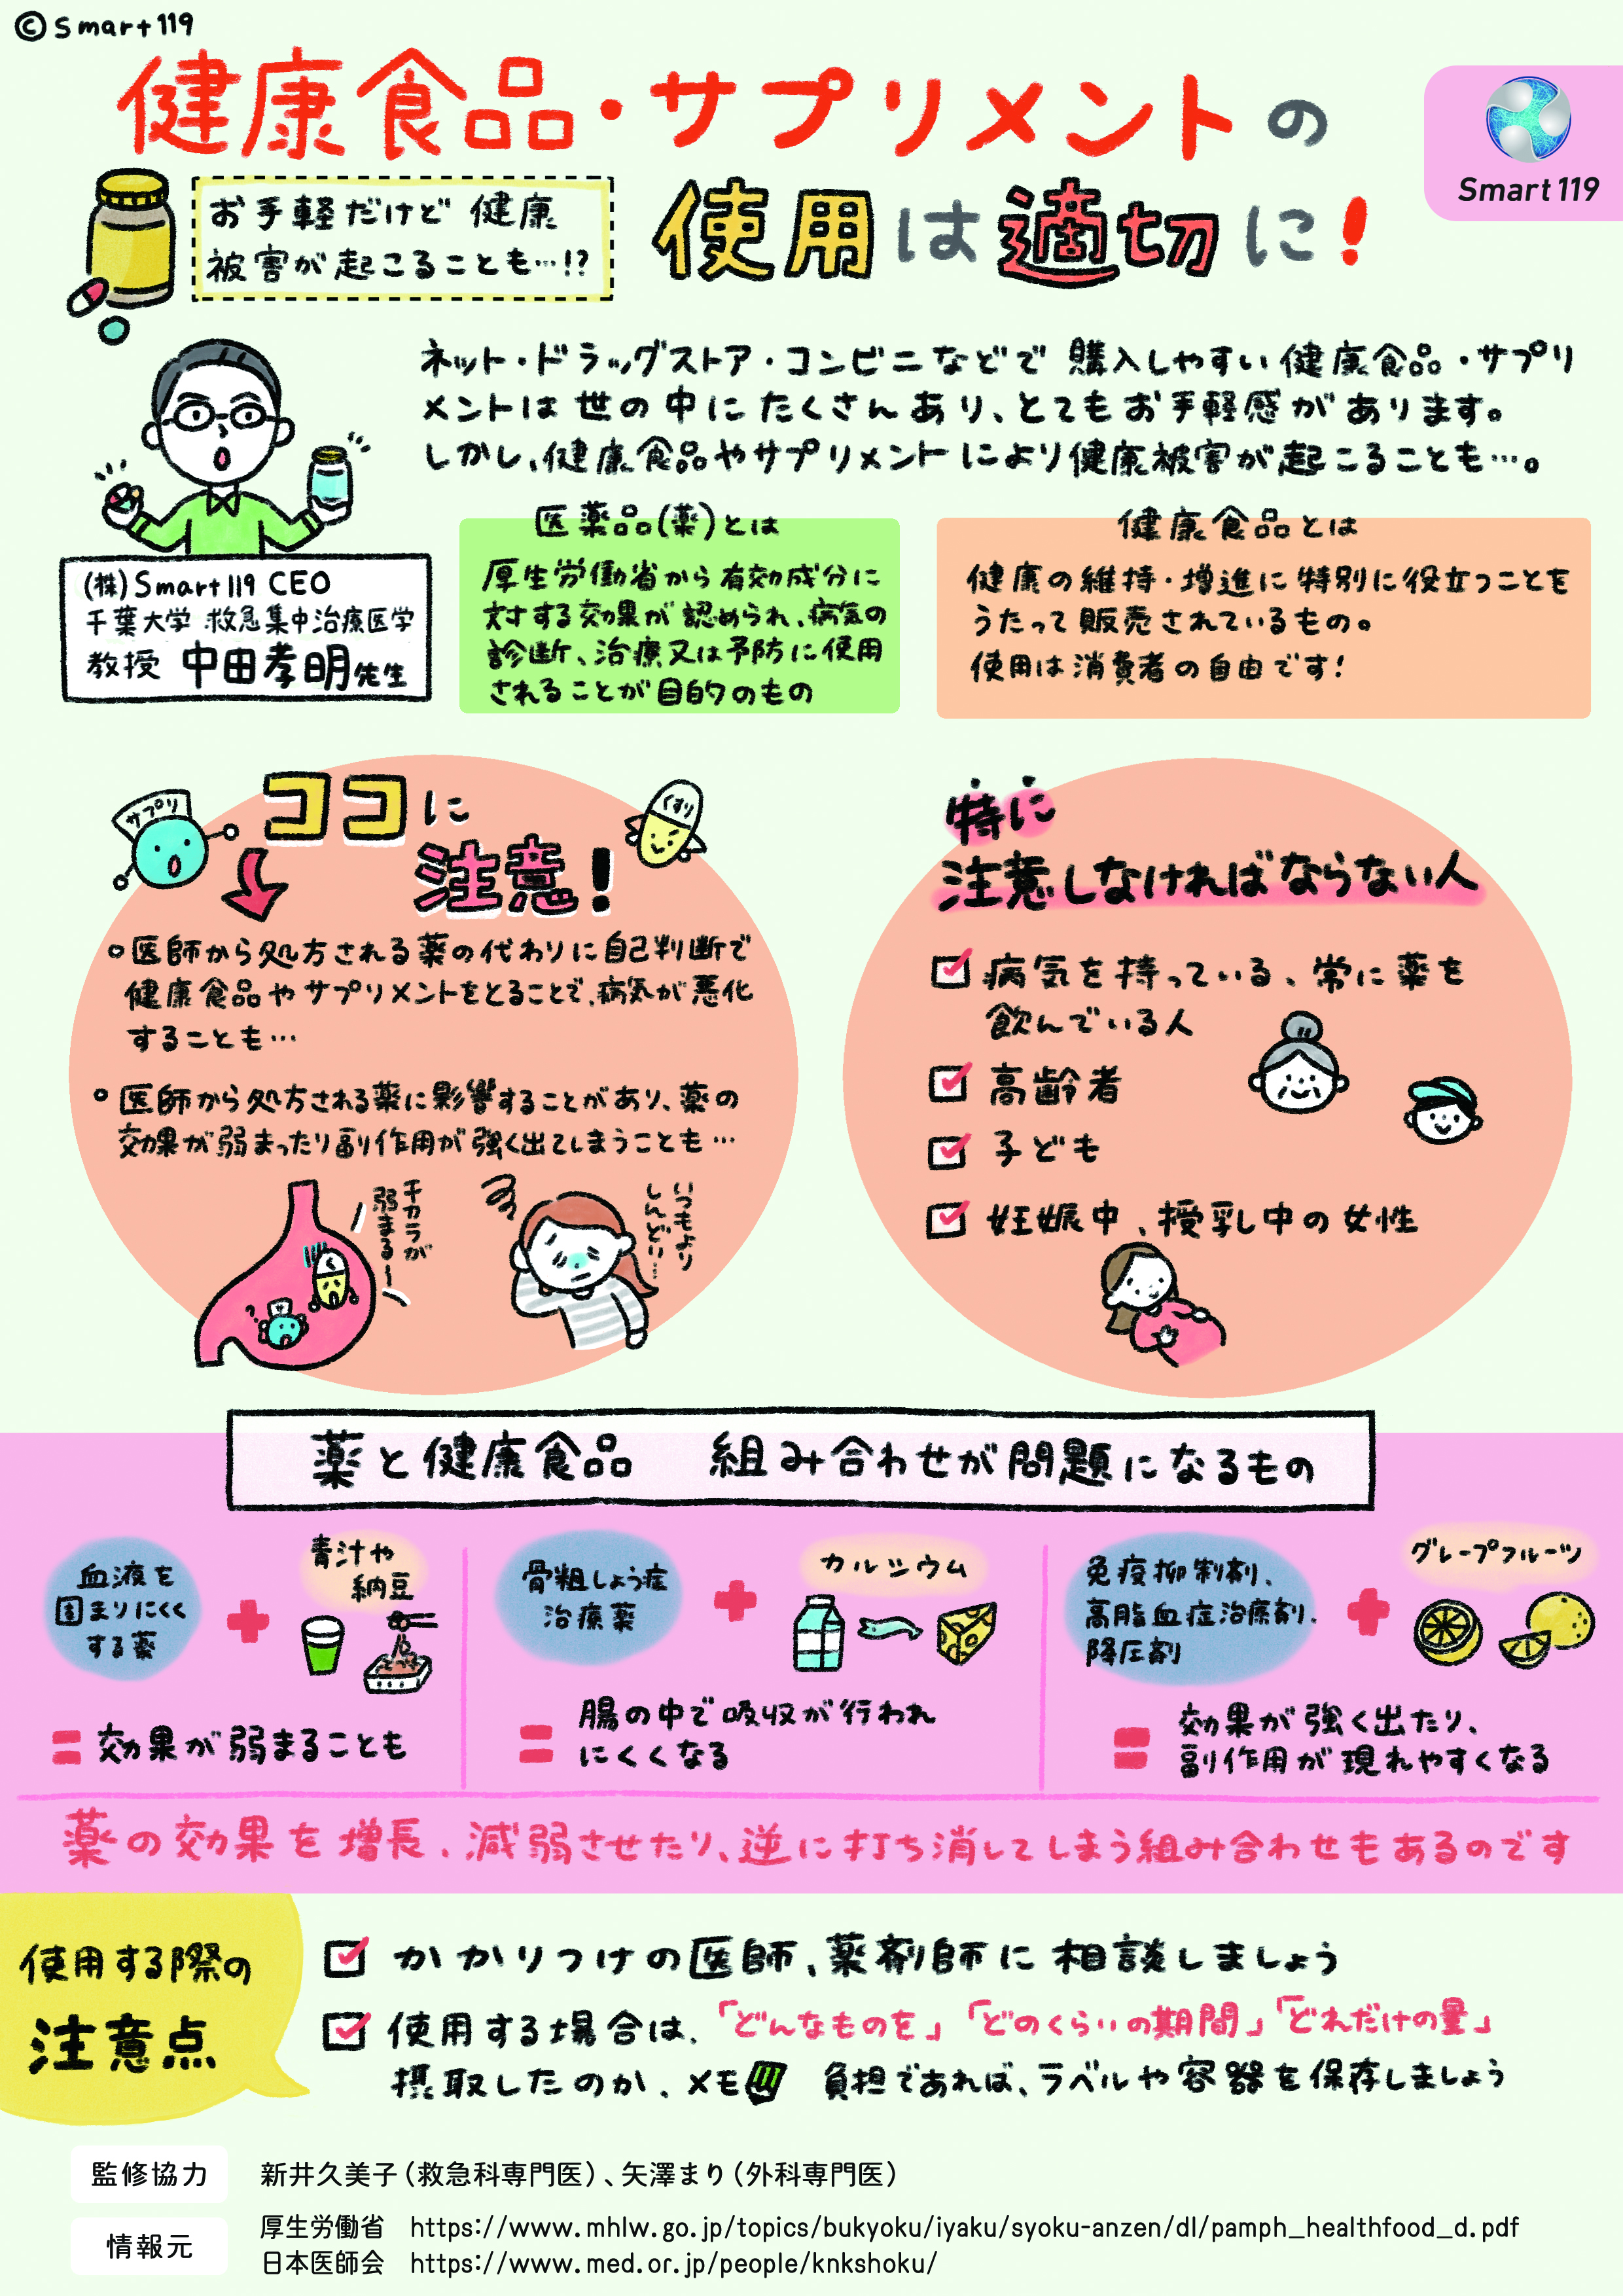 健康食品、サプリメントの使用は適切に｜Smart119 Manga｜株式会社Smart119